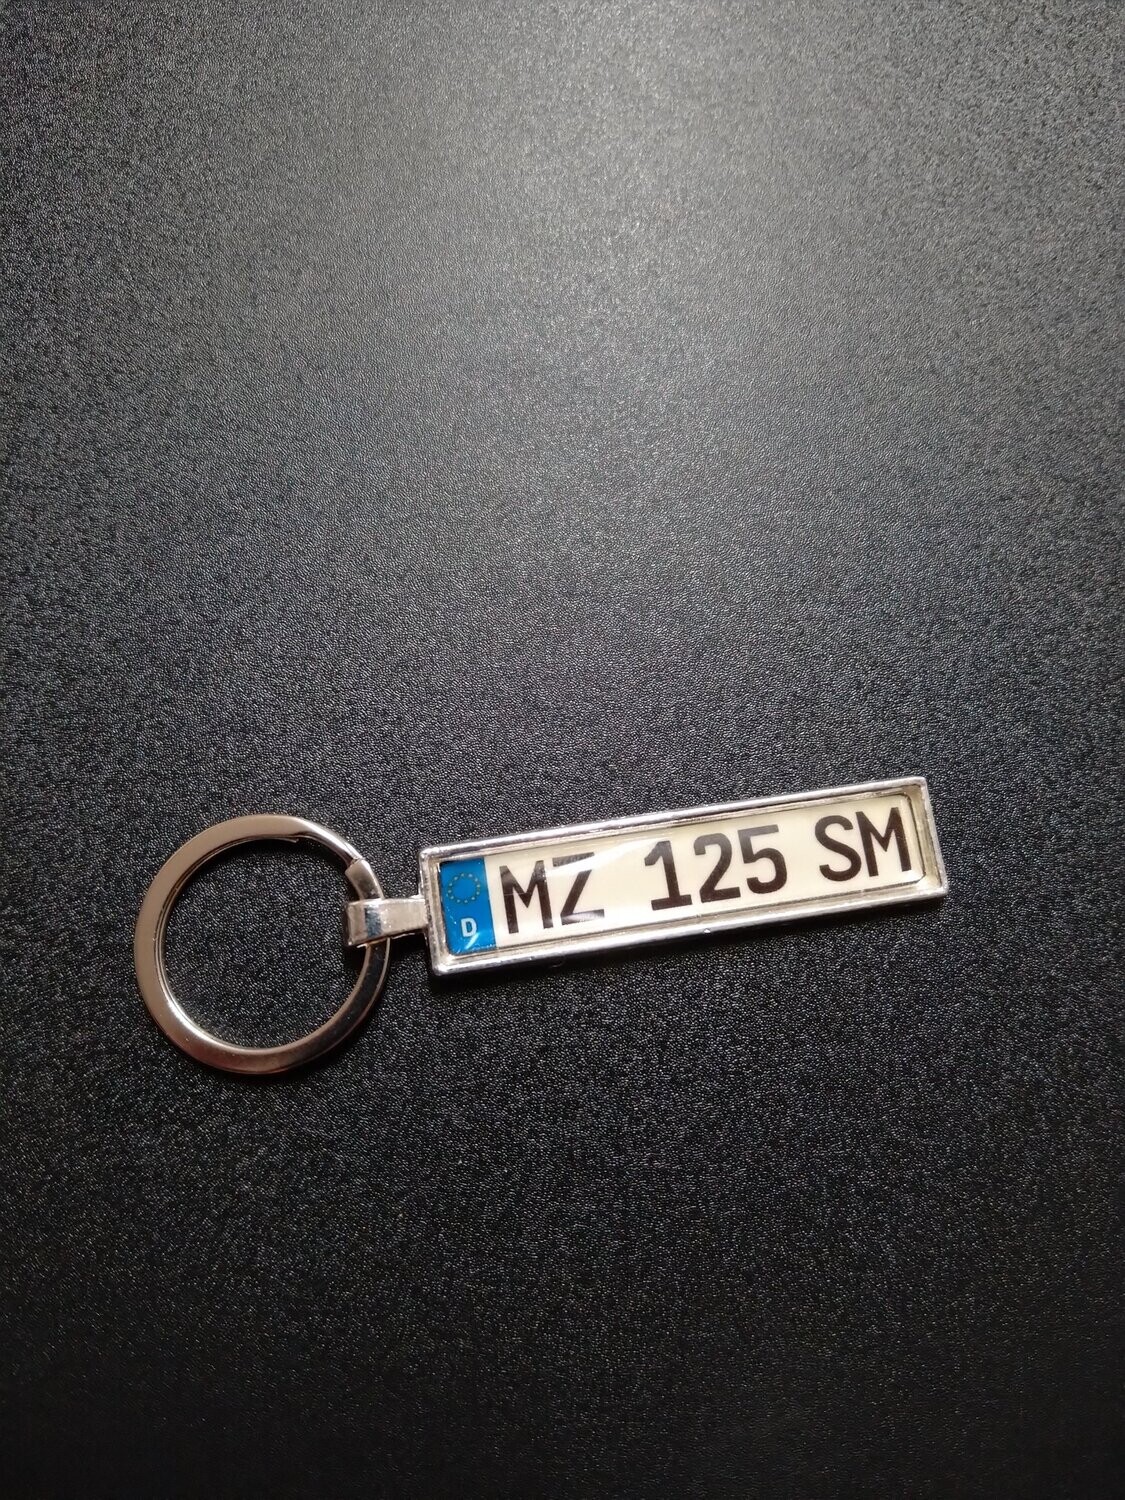 Schlüsselanhänger "MZ 125 SM"